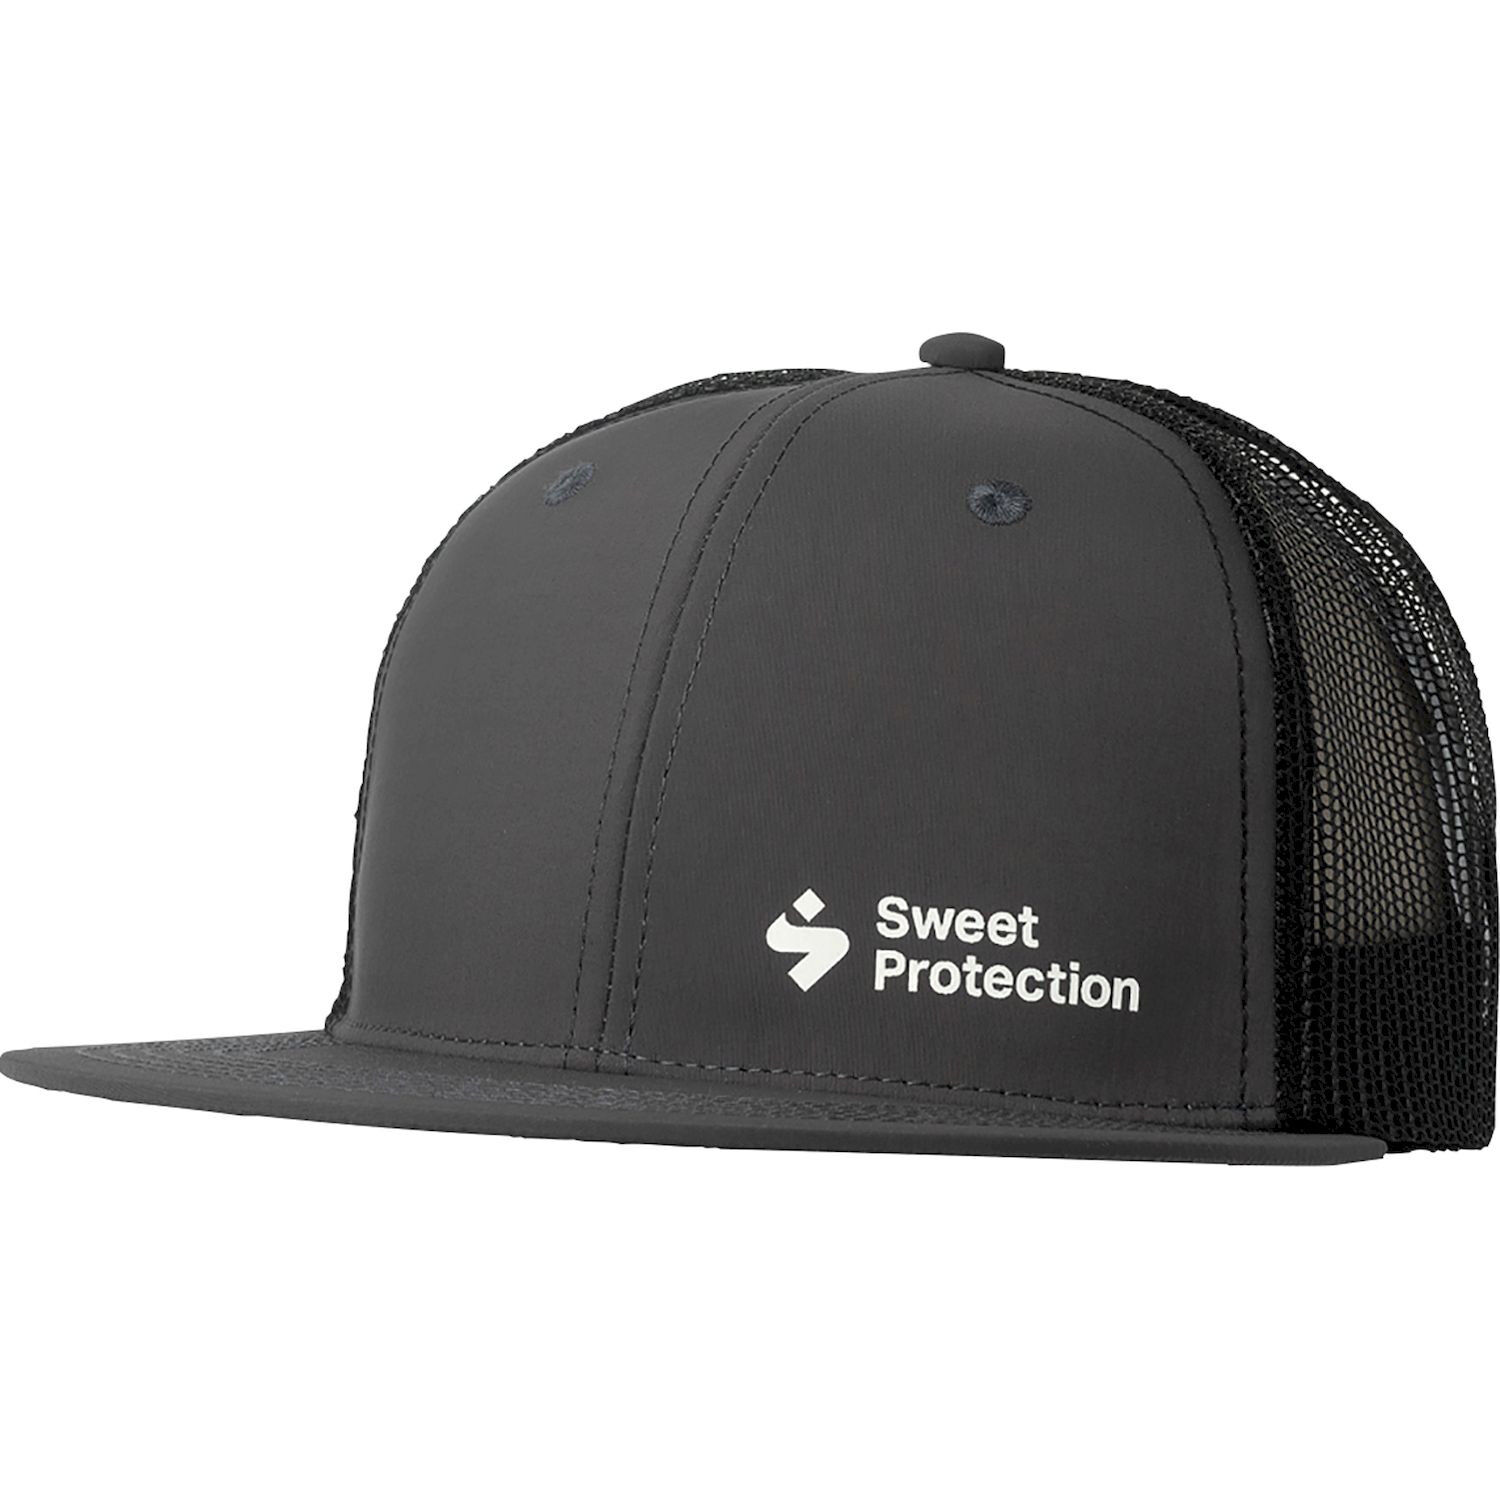 Sweet Protection Corporate Trucker Cap - Mütze - Herren